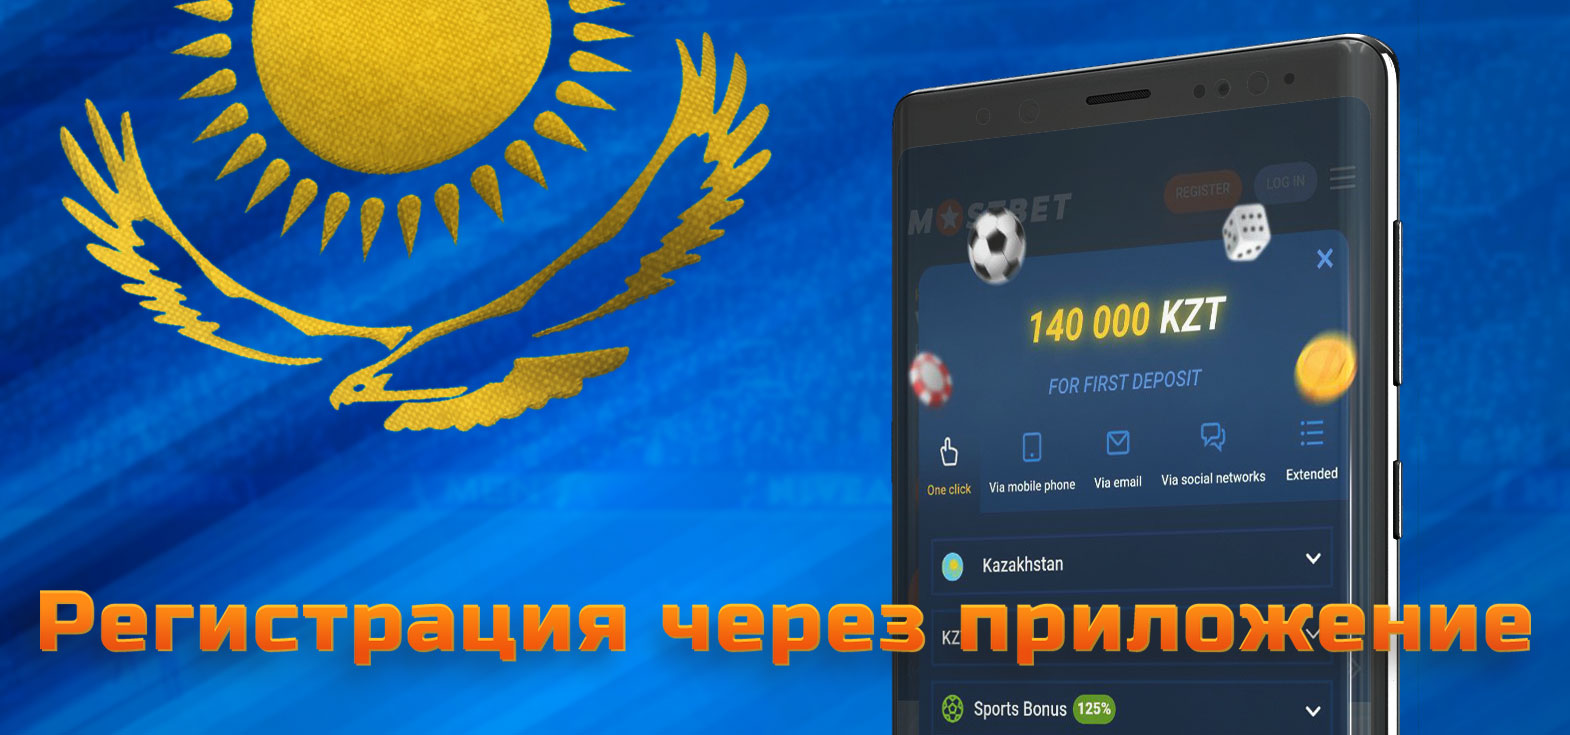 Подробная инструкция по регистрации в БК Mostbet для игроков из Казахстана.